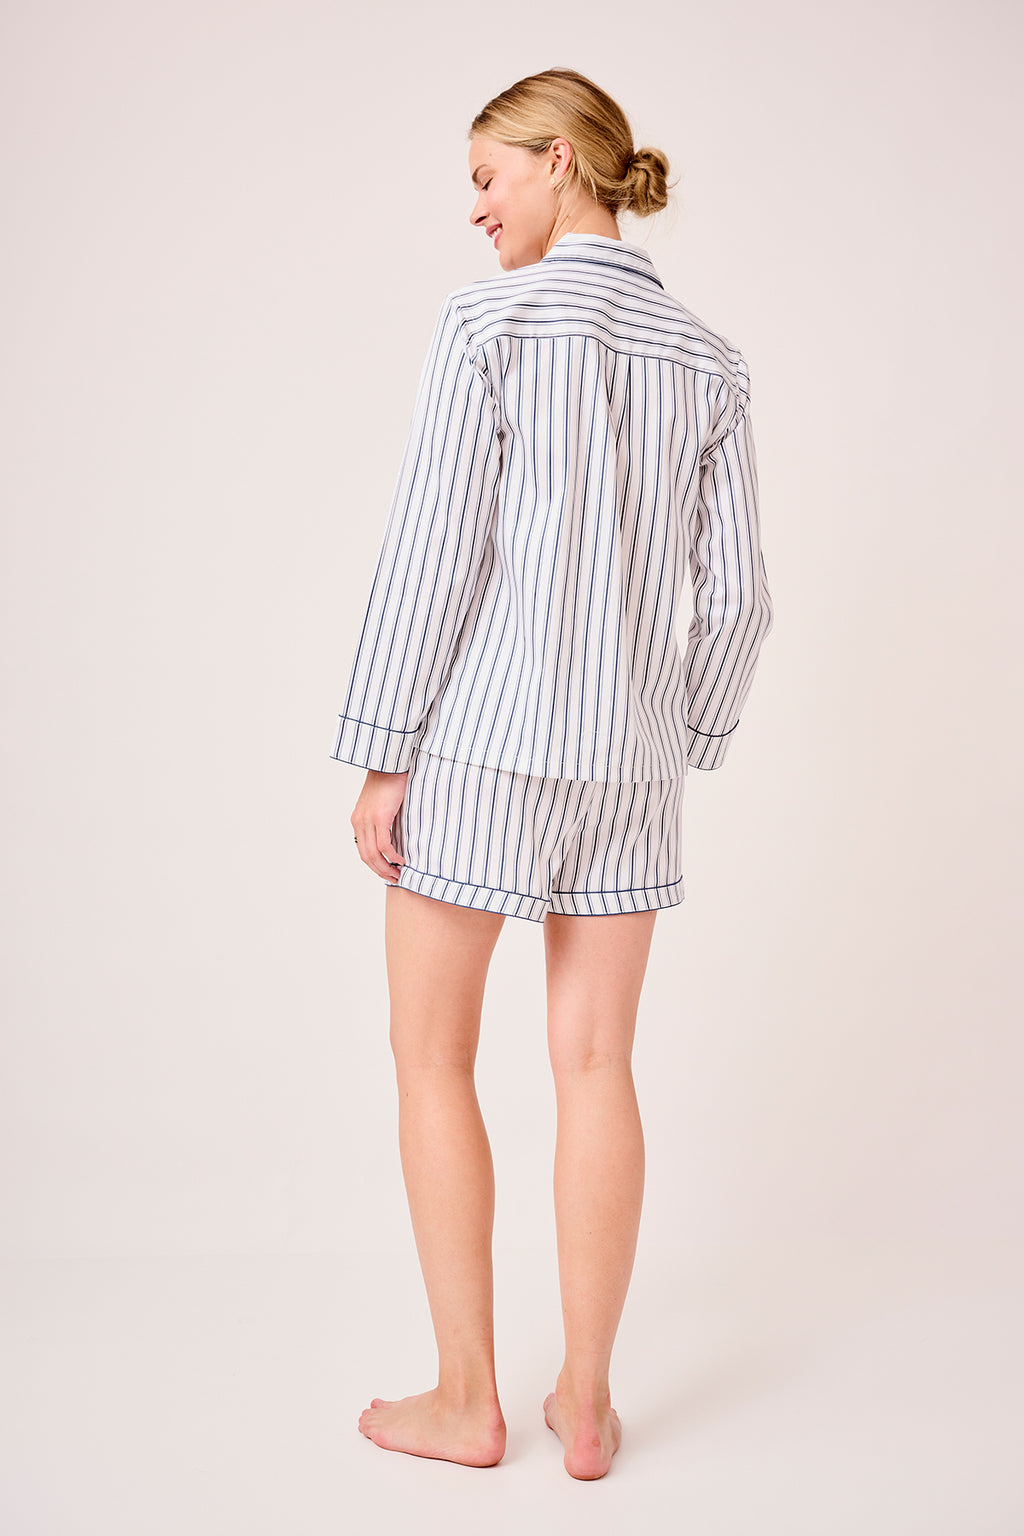 LAKE | Women | Poplin Pajamas | Navy Ticking Stripe Piped Shorts Set